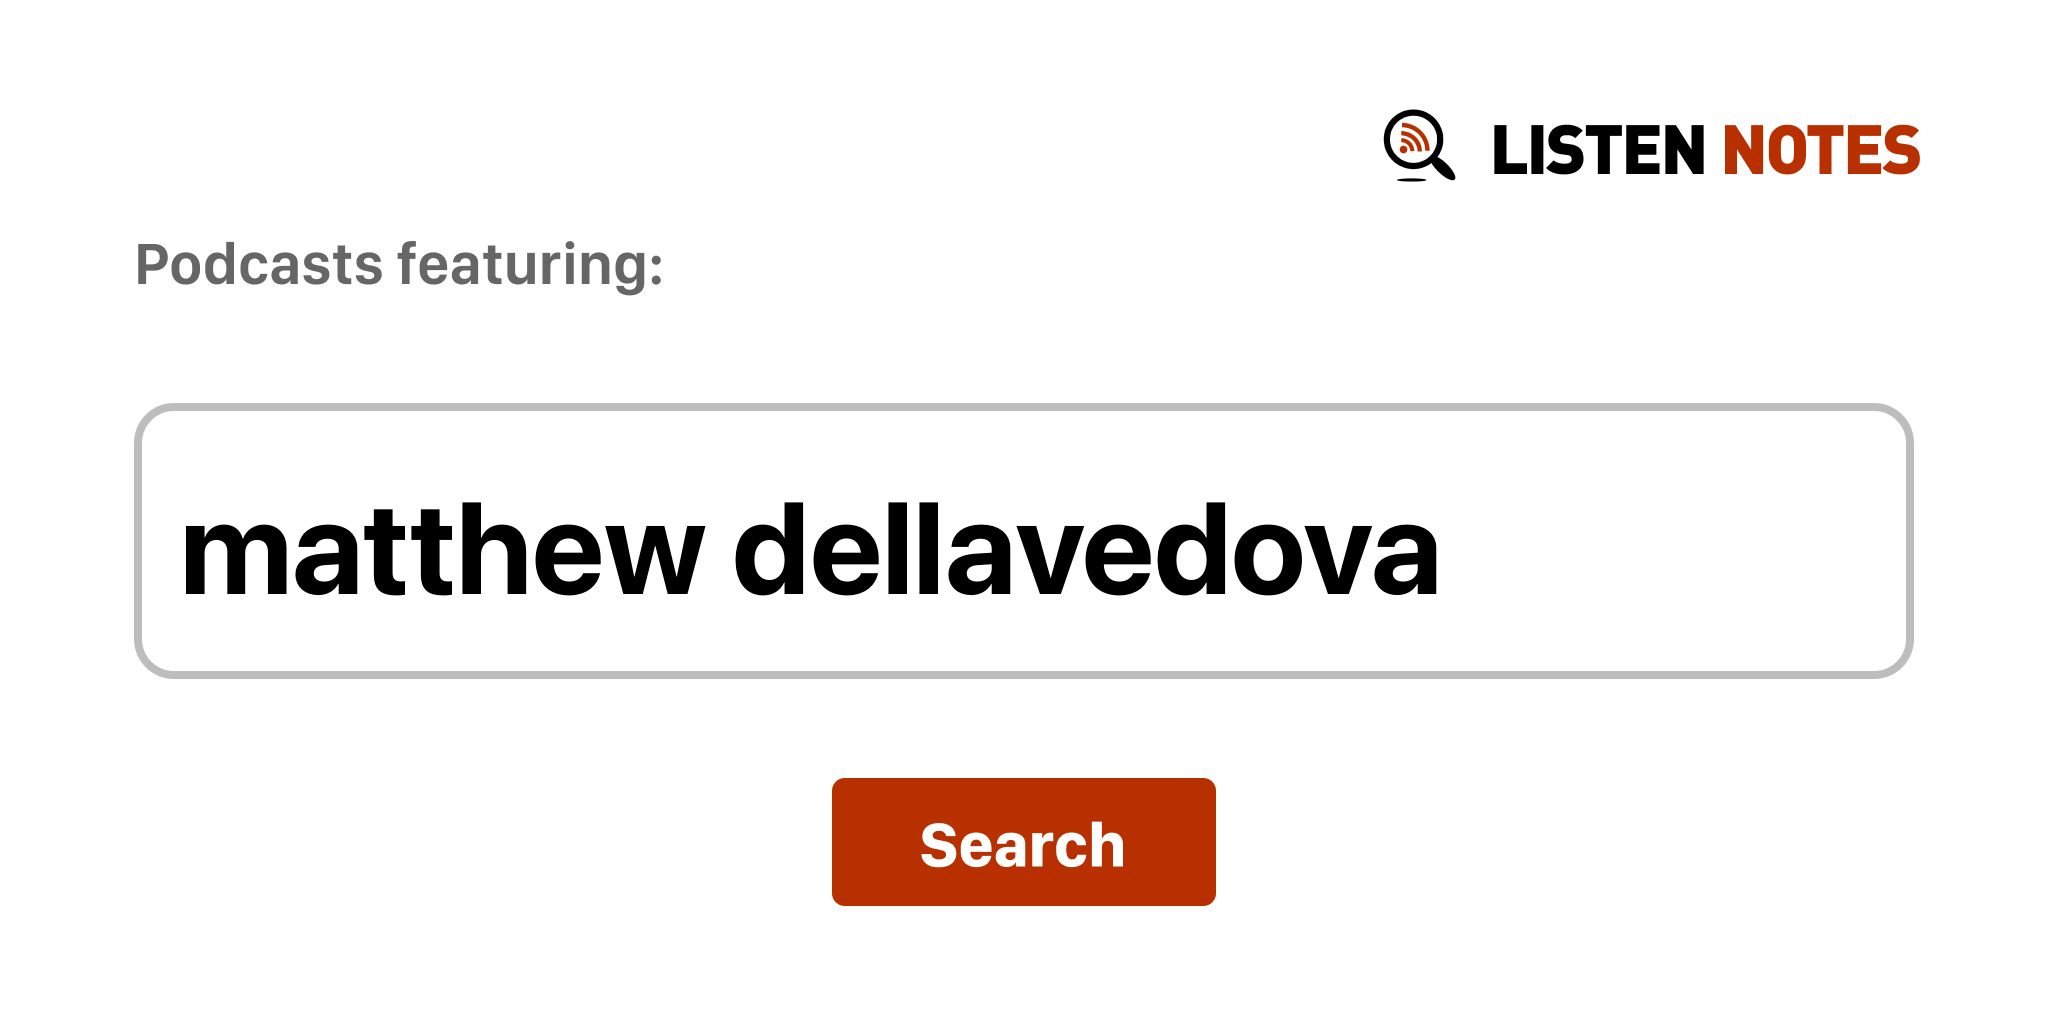 Matthew Dellavedova - Wikipedia